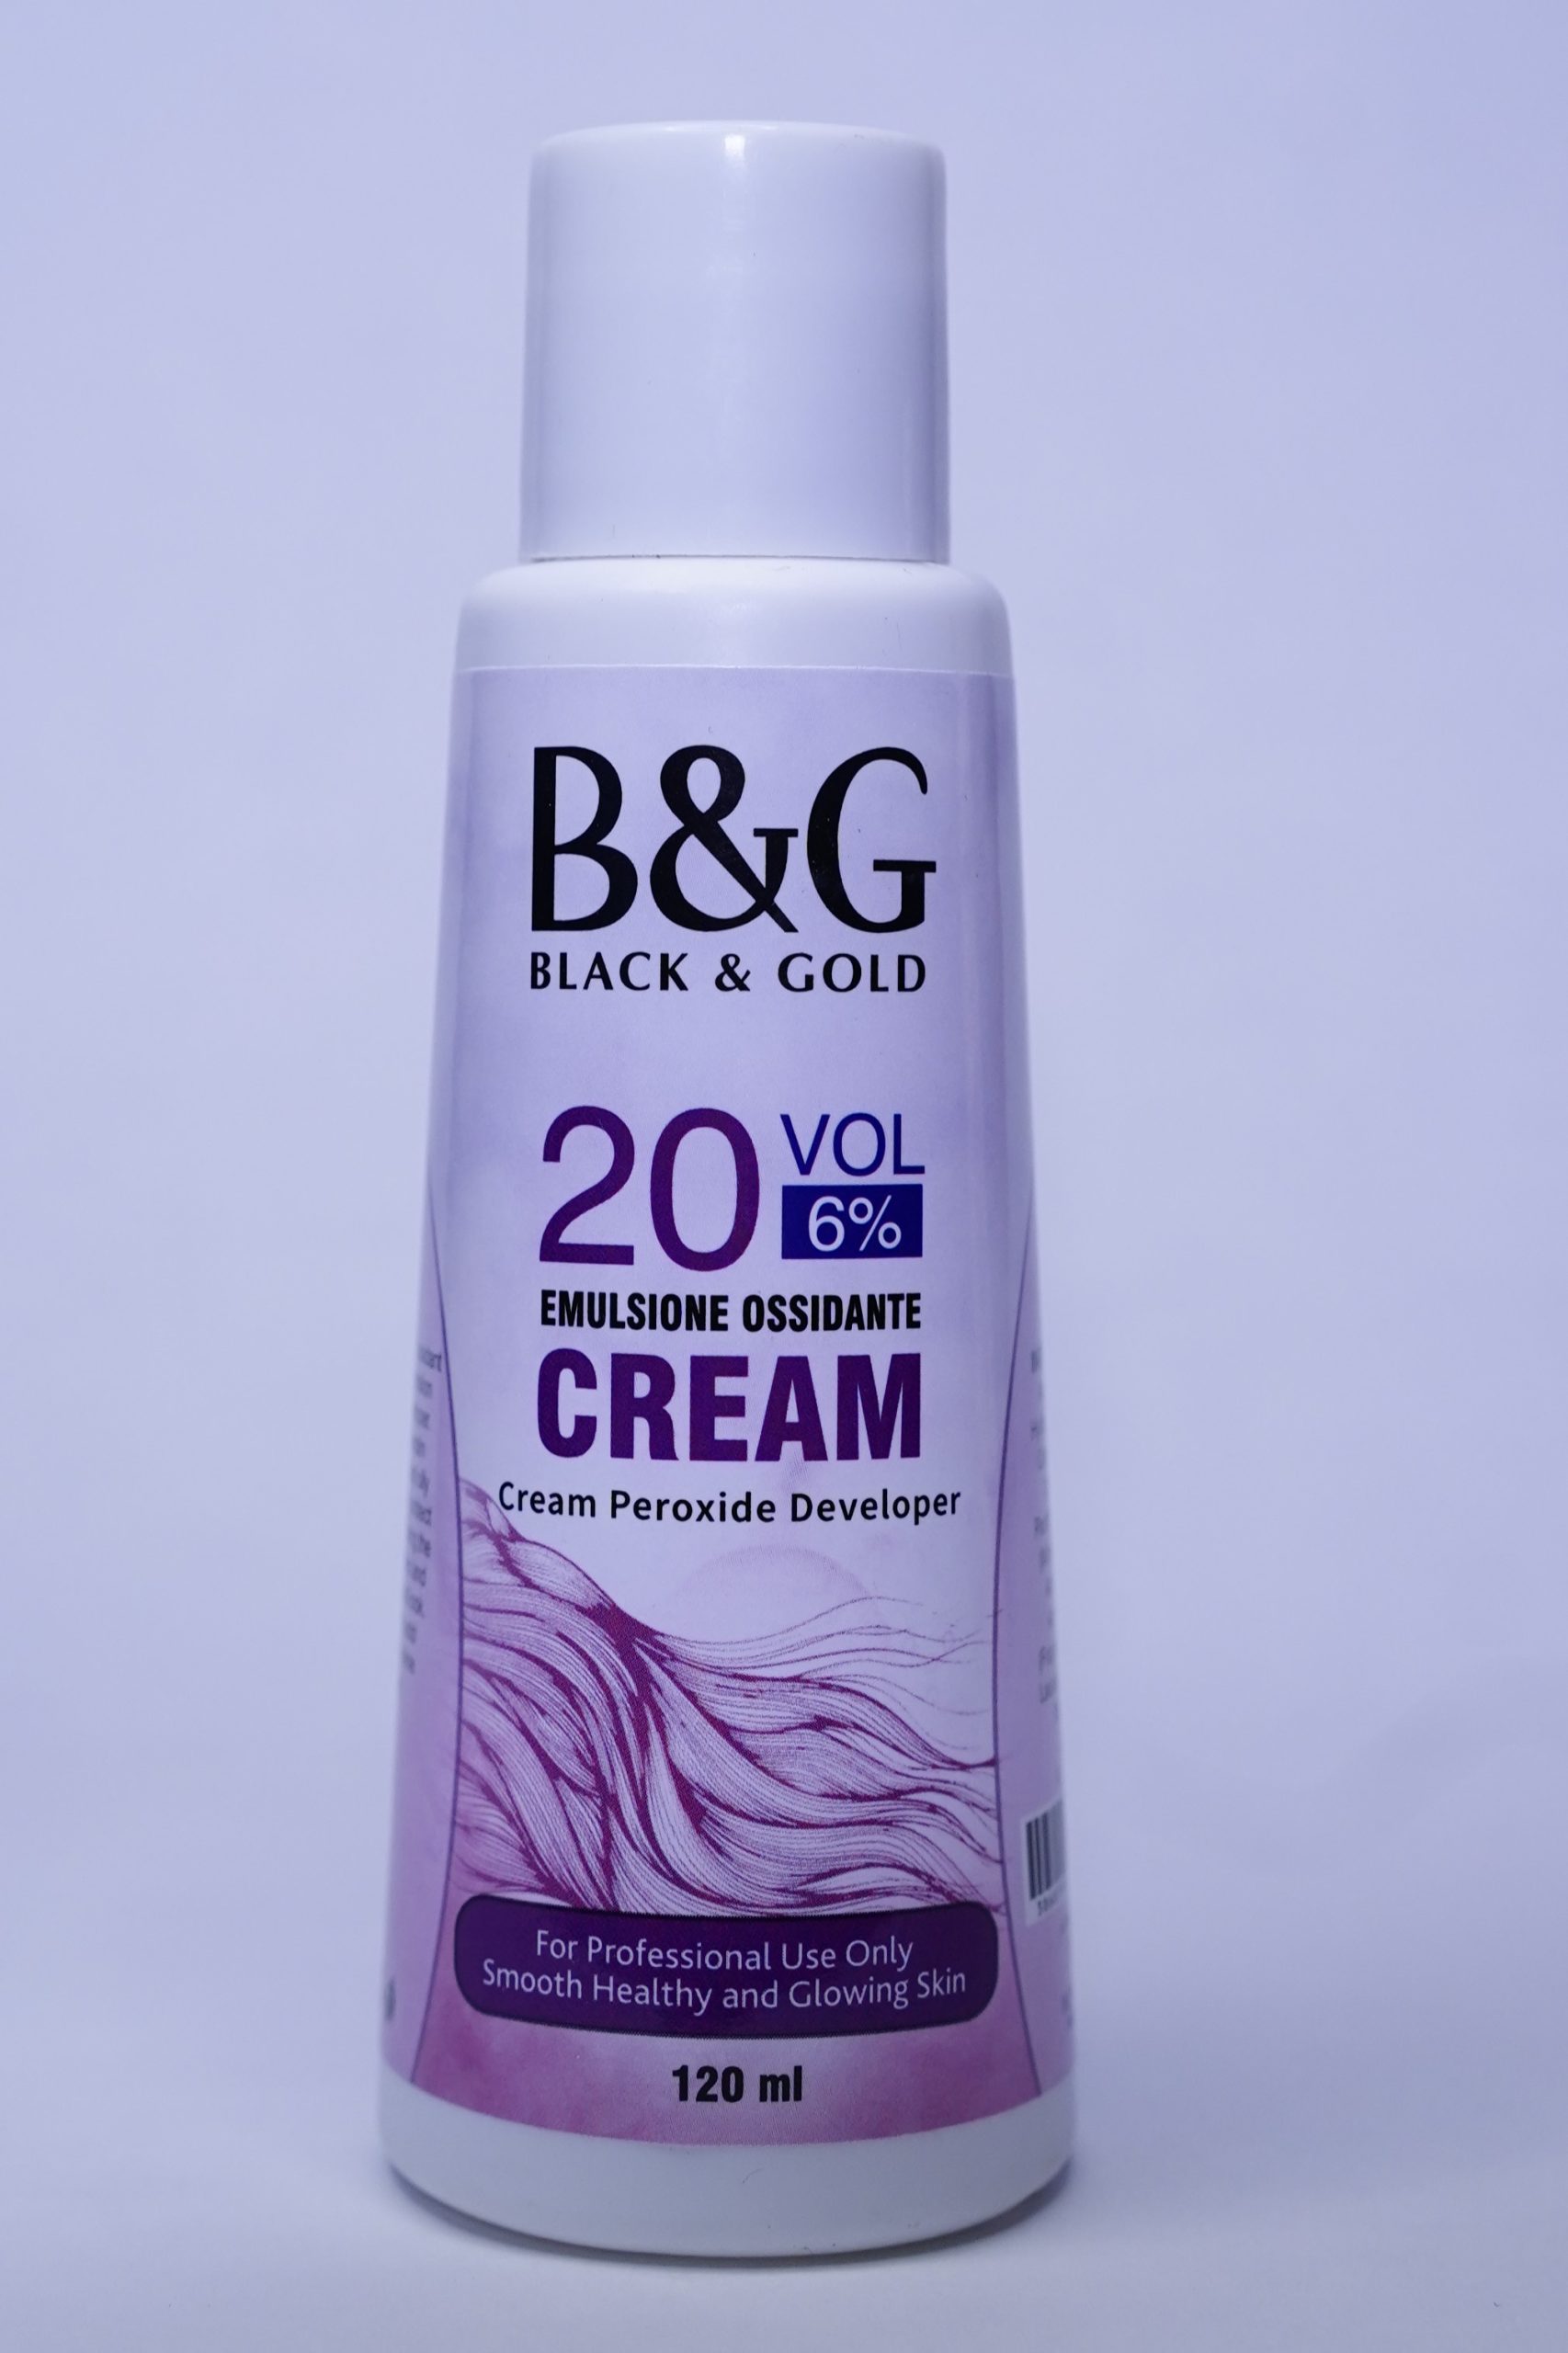 20 Vol 6% Emulsione Ossidante Cream